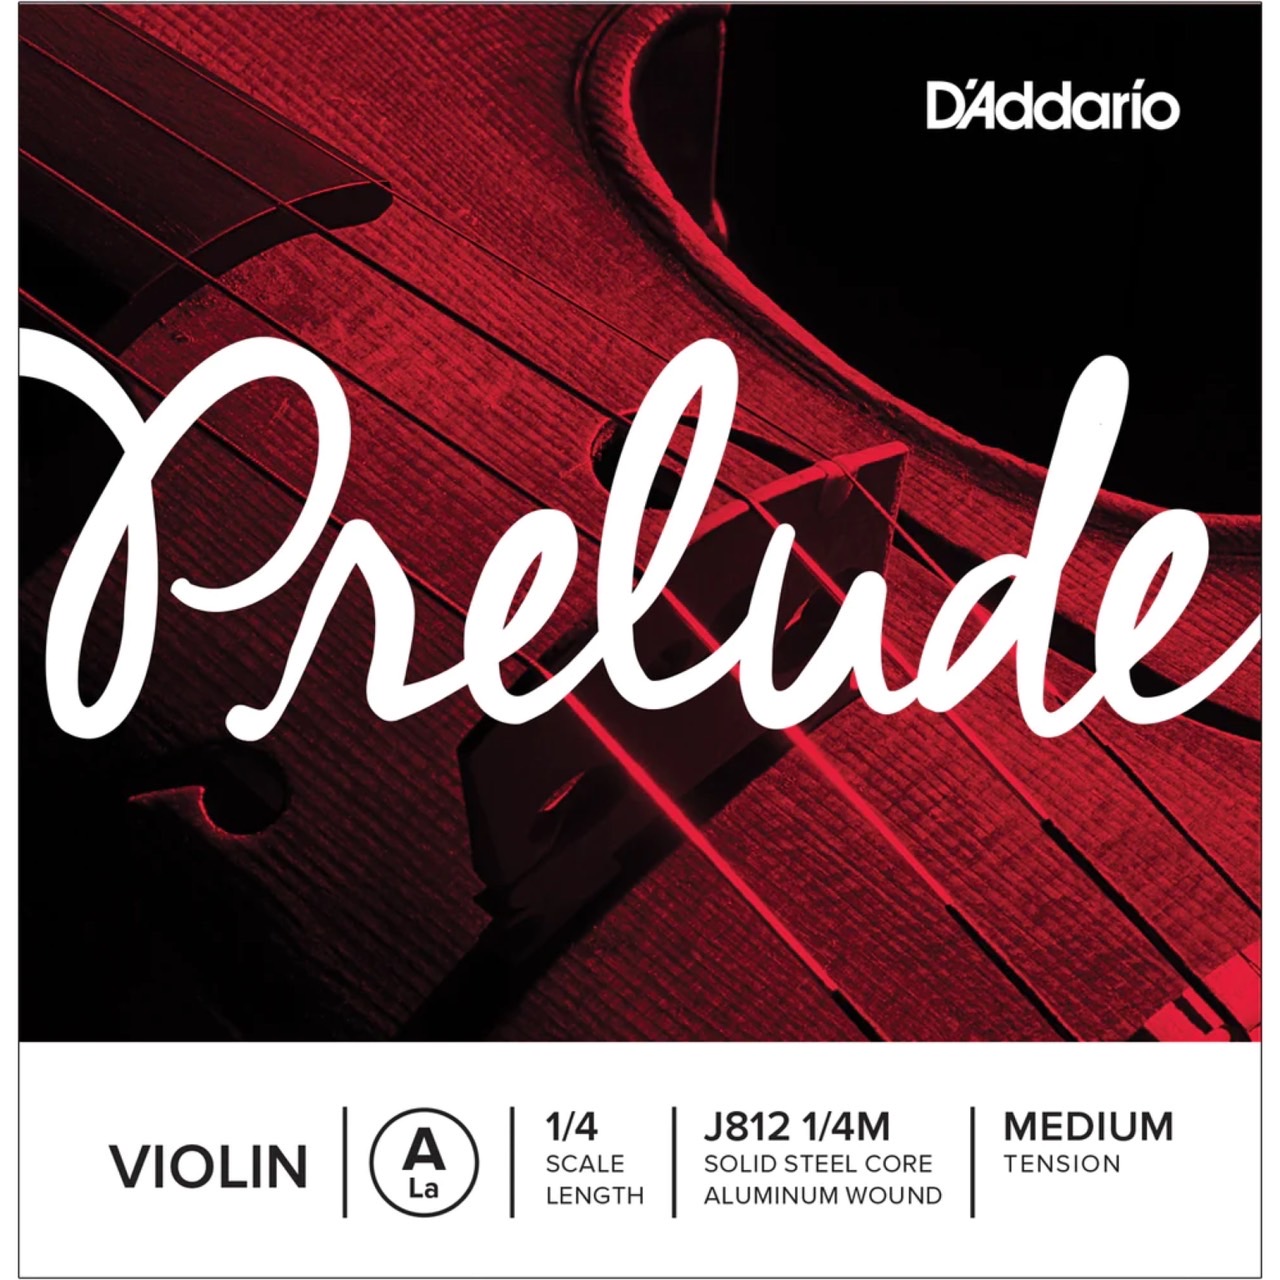 สายไวโอลิน D’Addario Prelude Violin String